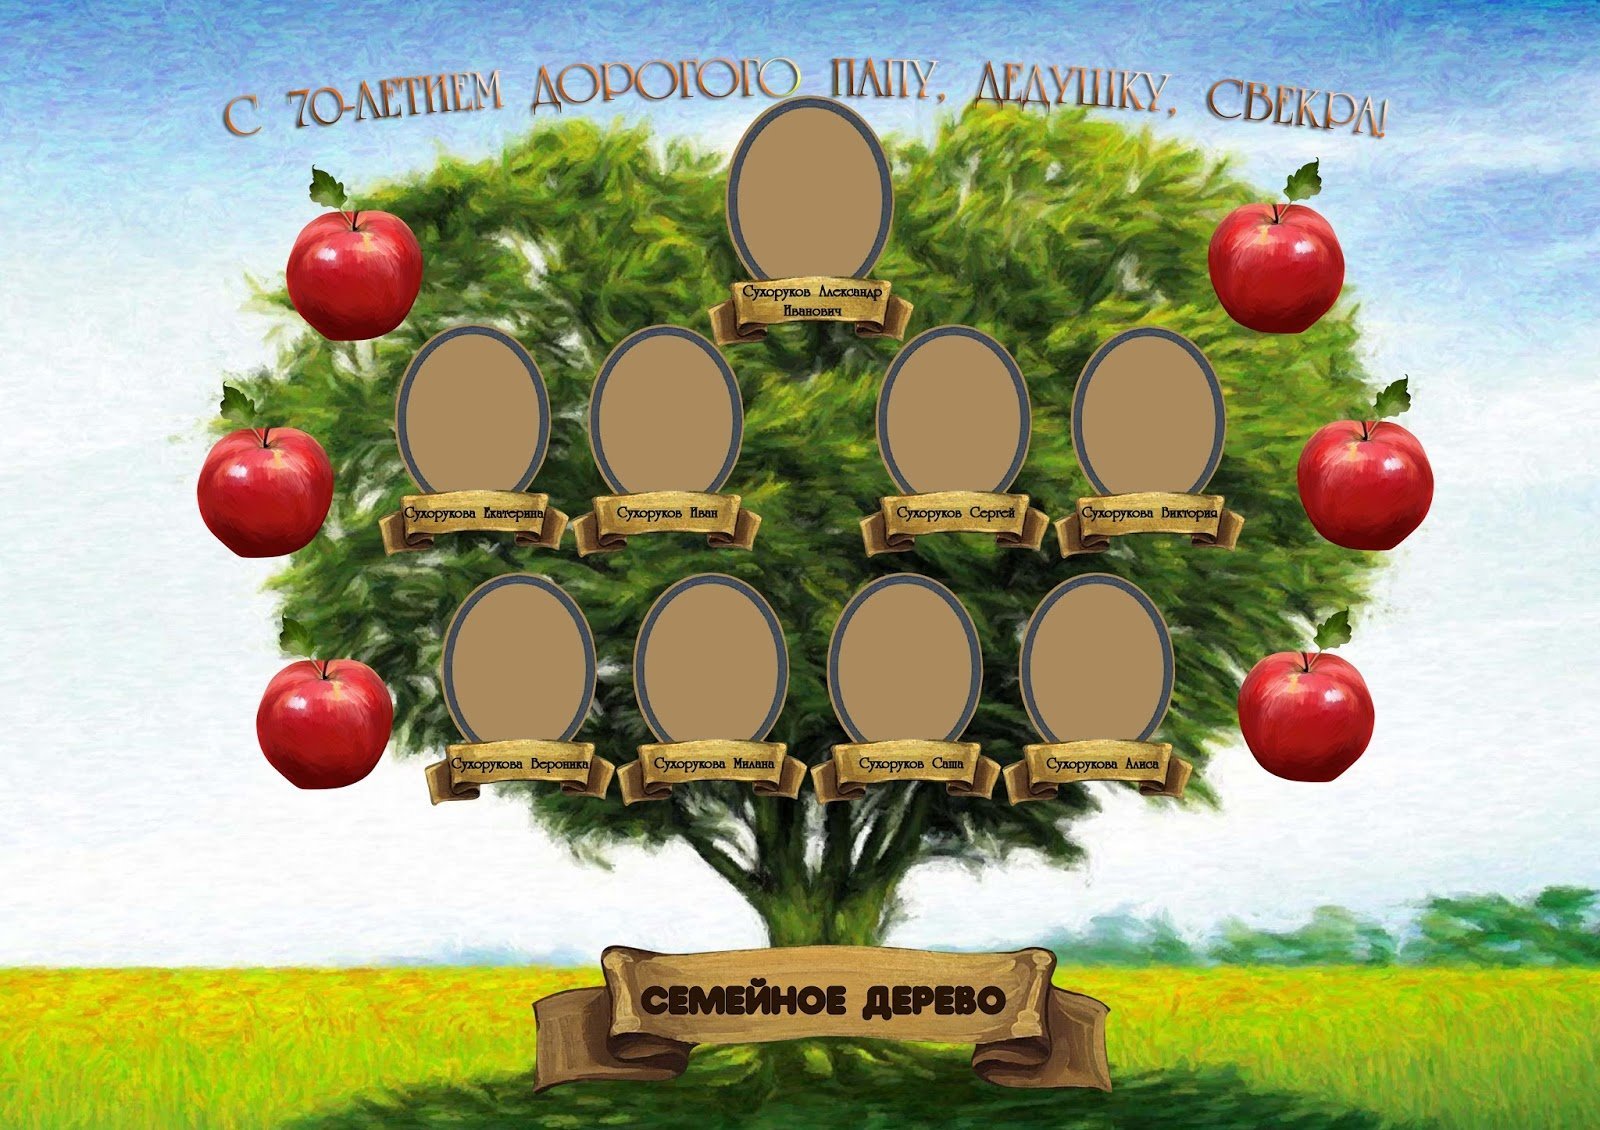 Как нарисовать генеалогическое дерево семьи поэтапно 7 уроков